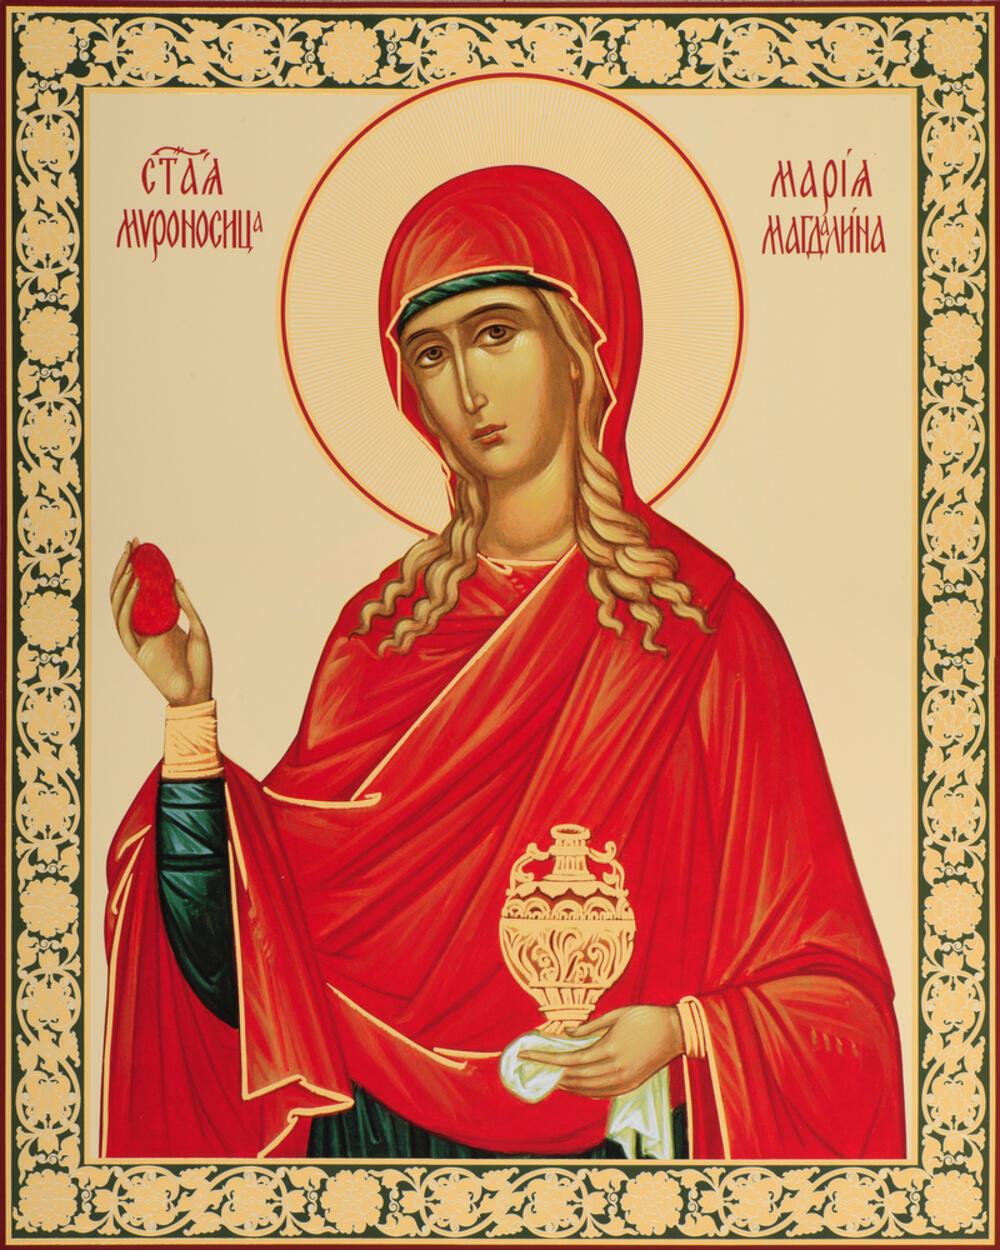 Ikona Marije Magdalene u crkvi u Odesi